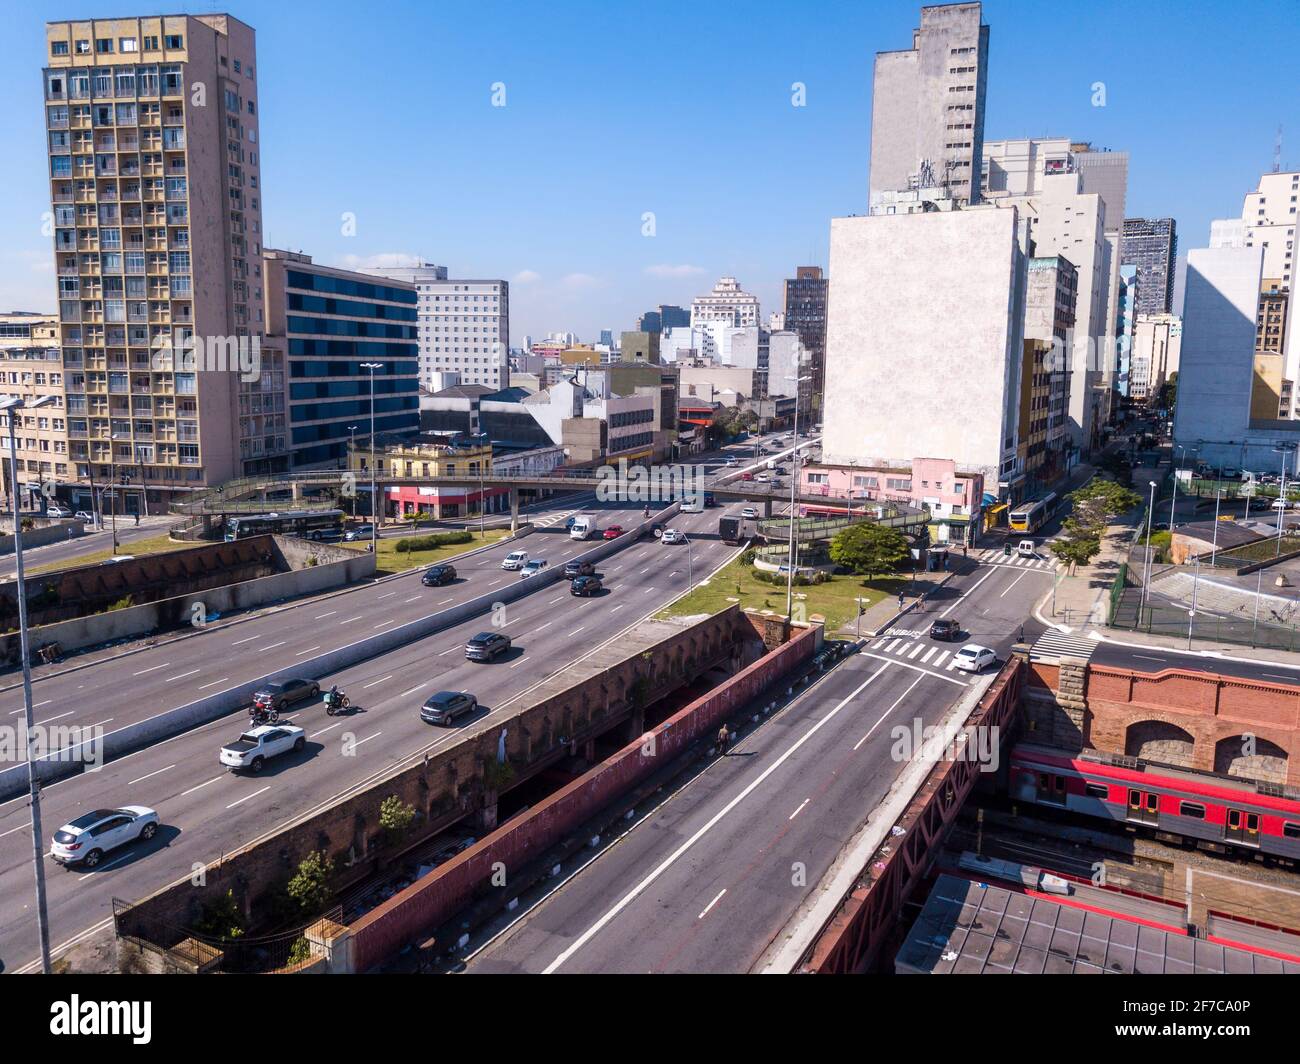 Splendida vista aerea dello skyline di Sao Paulo, degli edifici e delle auto in strada durante il sole giorno d'estate. Brasile. Concetto di urbano, paesaggio urbano, metropoli Foto Stock